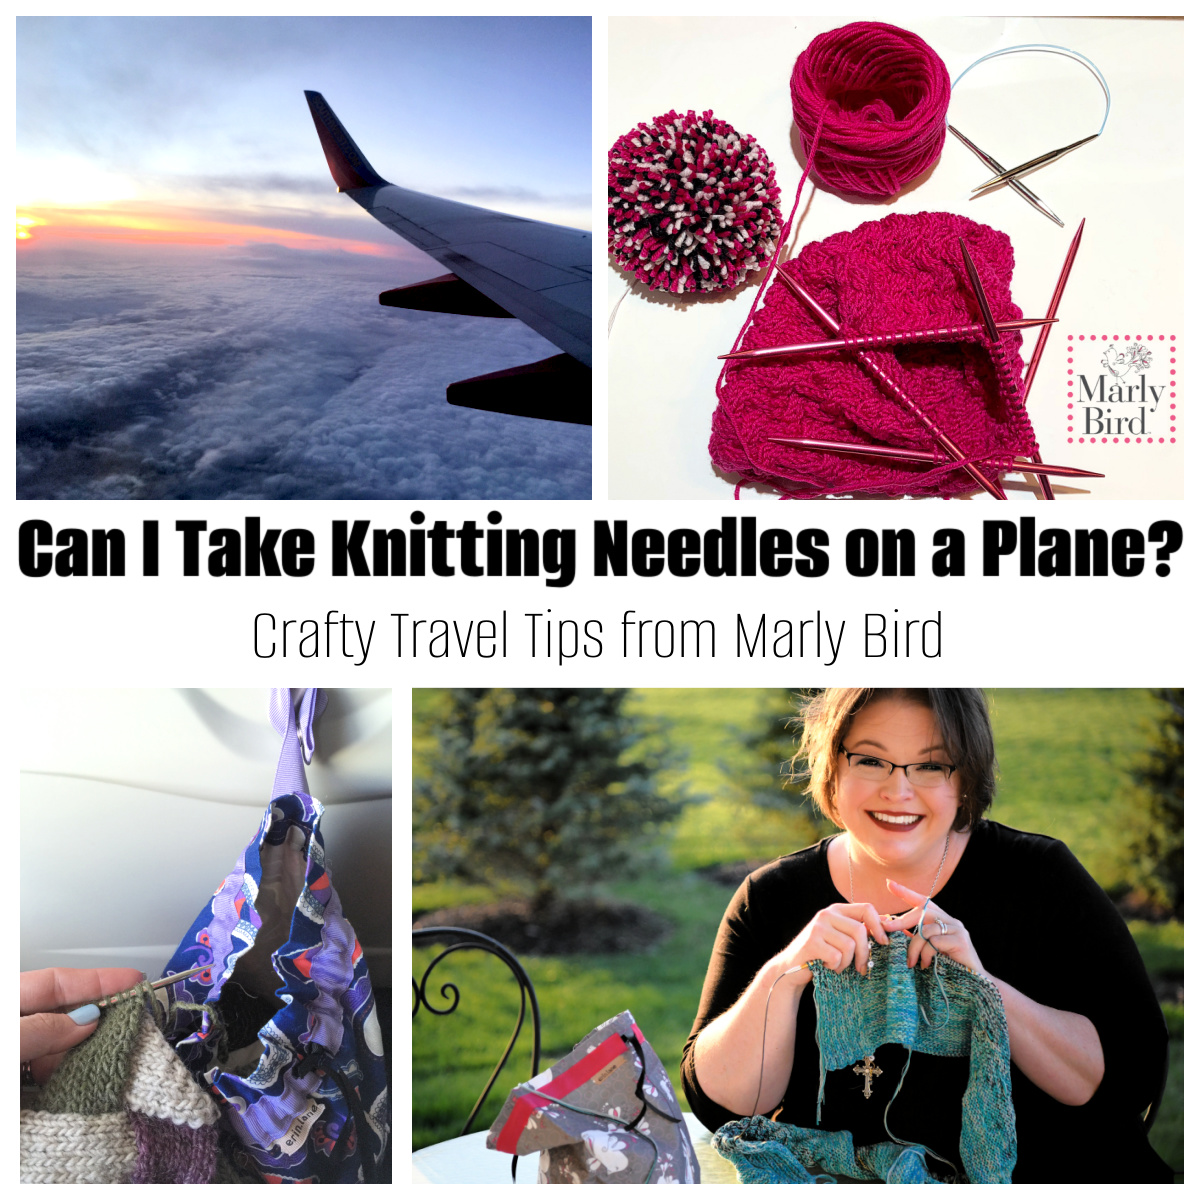 Do you need sharp-tipped knitting needles? - Shiny Happy World